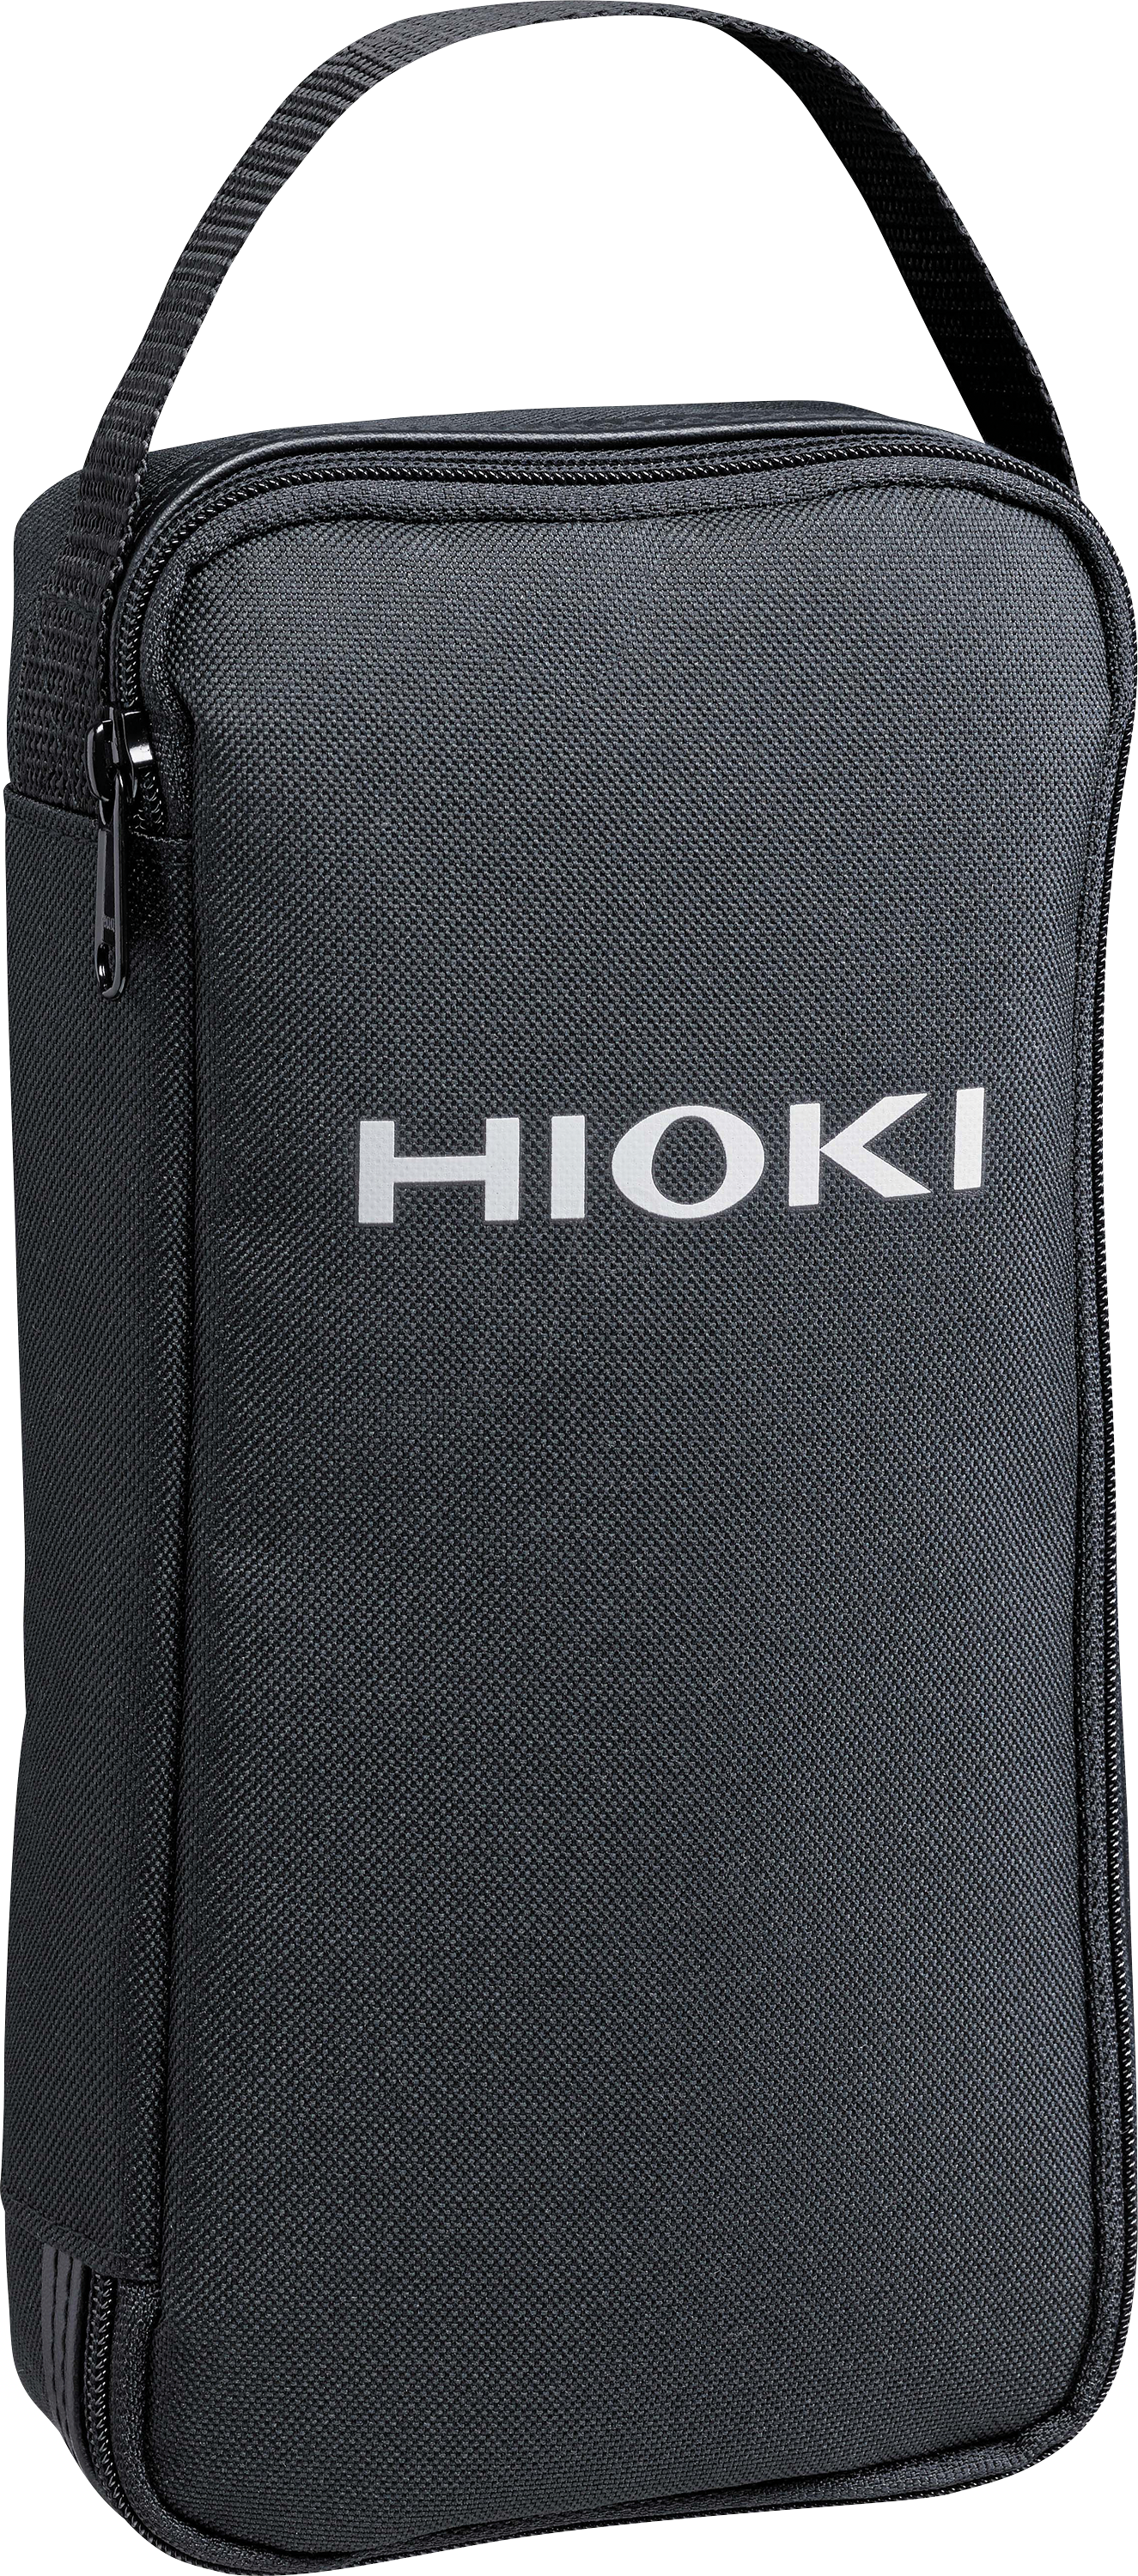 HIOKI C0203 - Tasche für HIOKI Zangenmultimeter von HIOKI